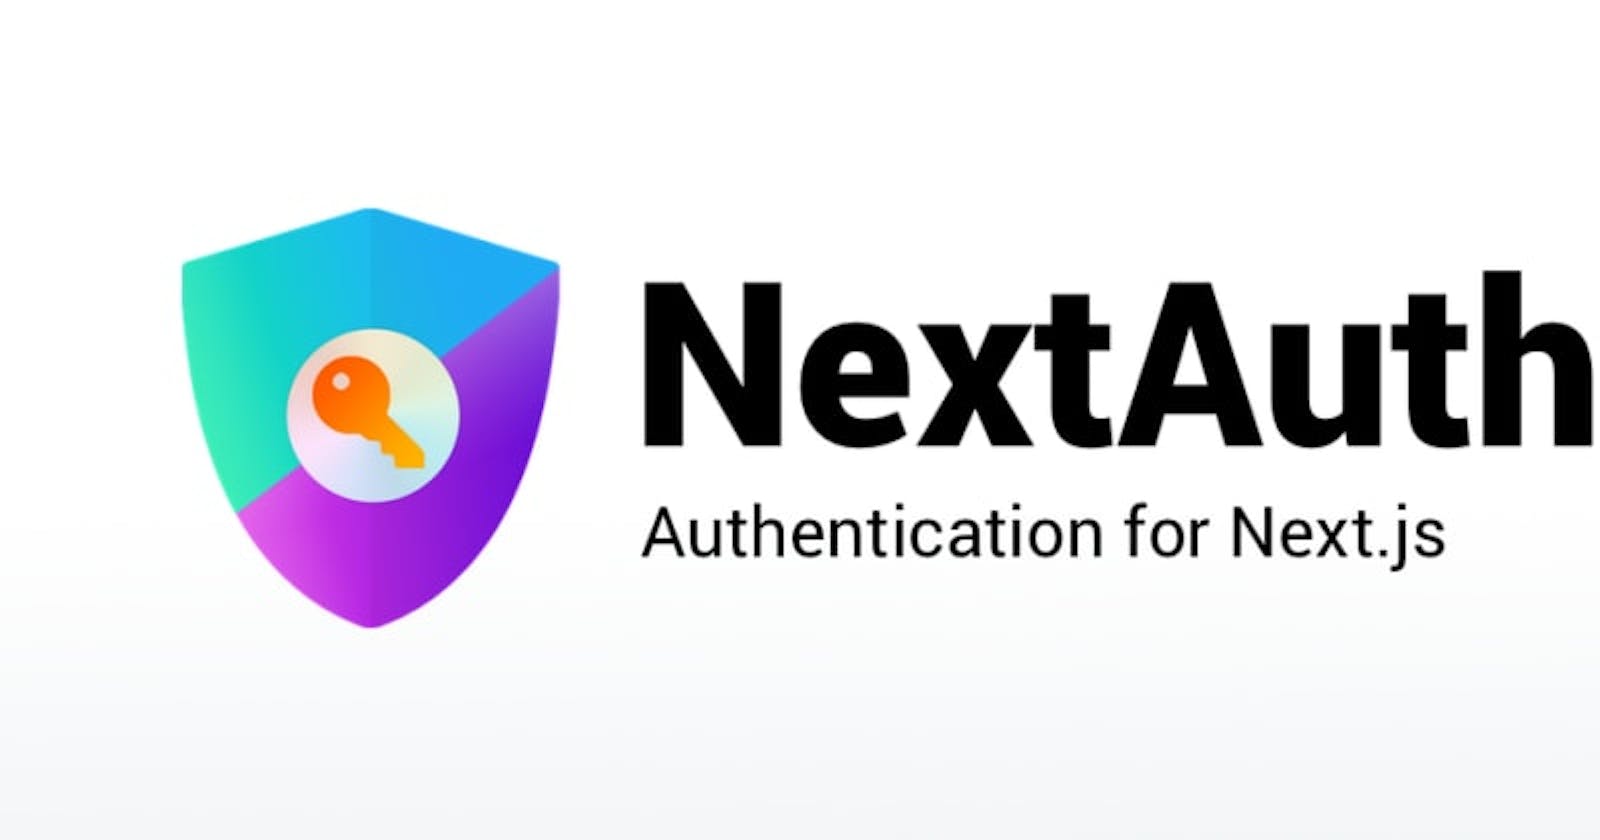 Next.js and NextAuth.js